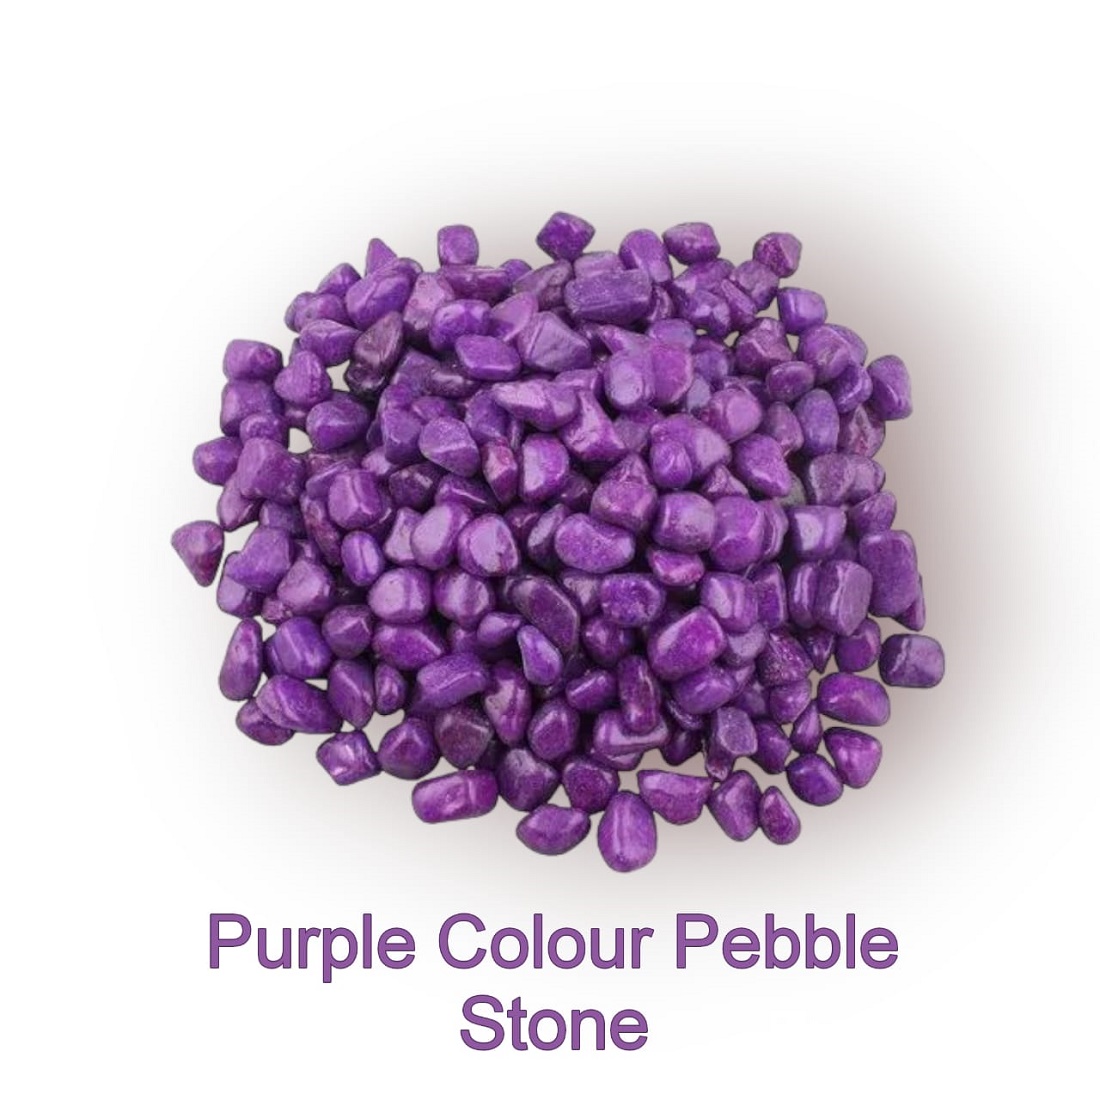 Stone Marble Pebbles for Home Garden Aquarium Outdoor Decoration ( 5KG, Purple)